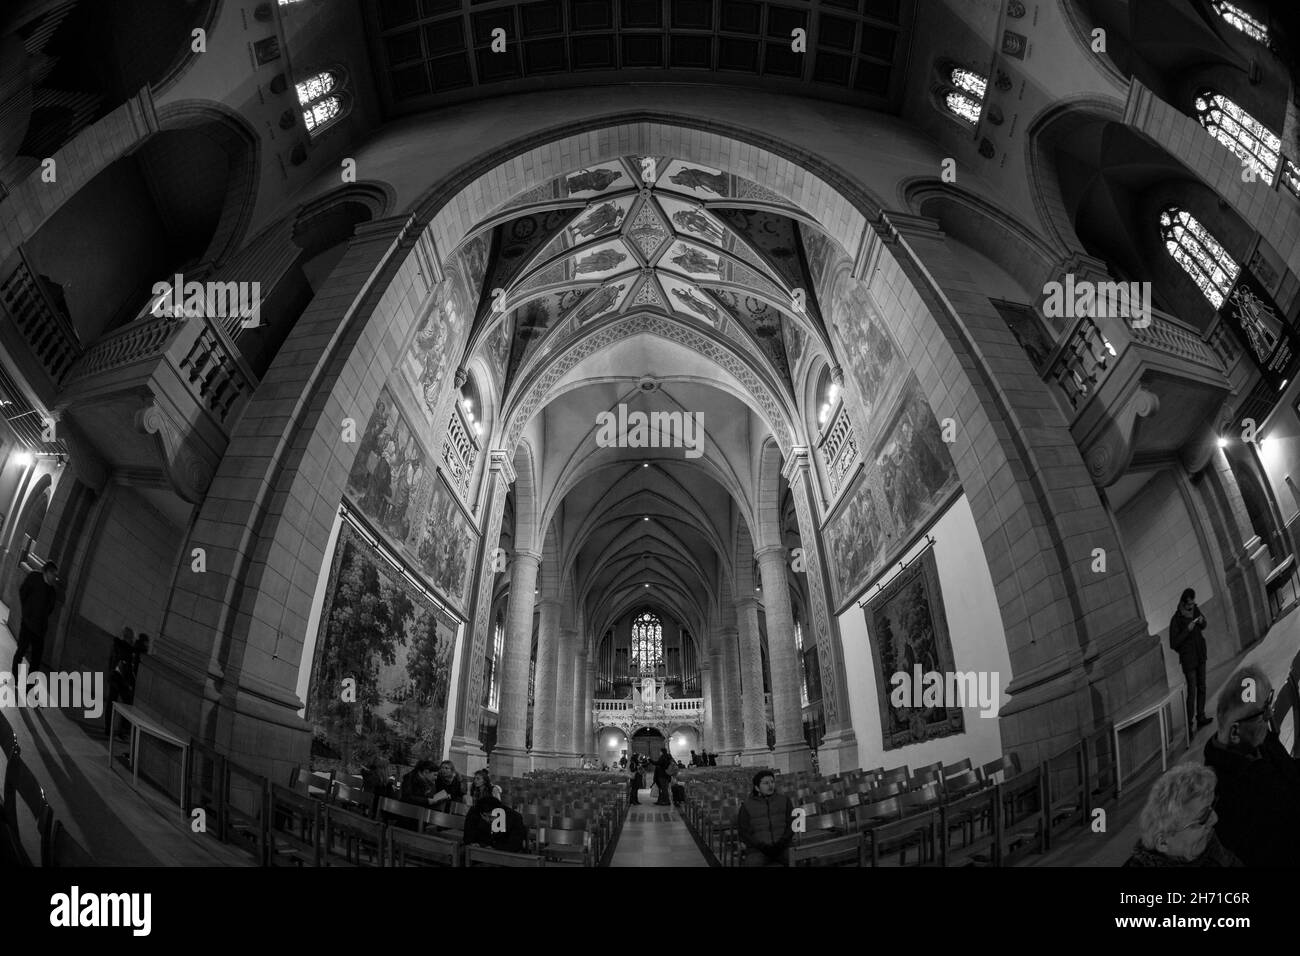 Innenansicht der Kathedrale Notre Dame. Luxemburg-Stadt, Luxemburg. Stockfoto